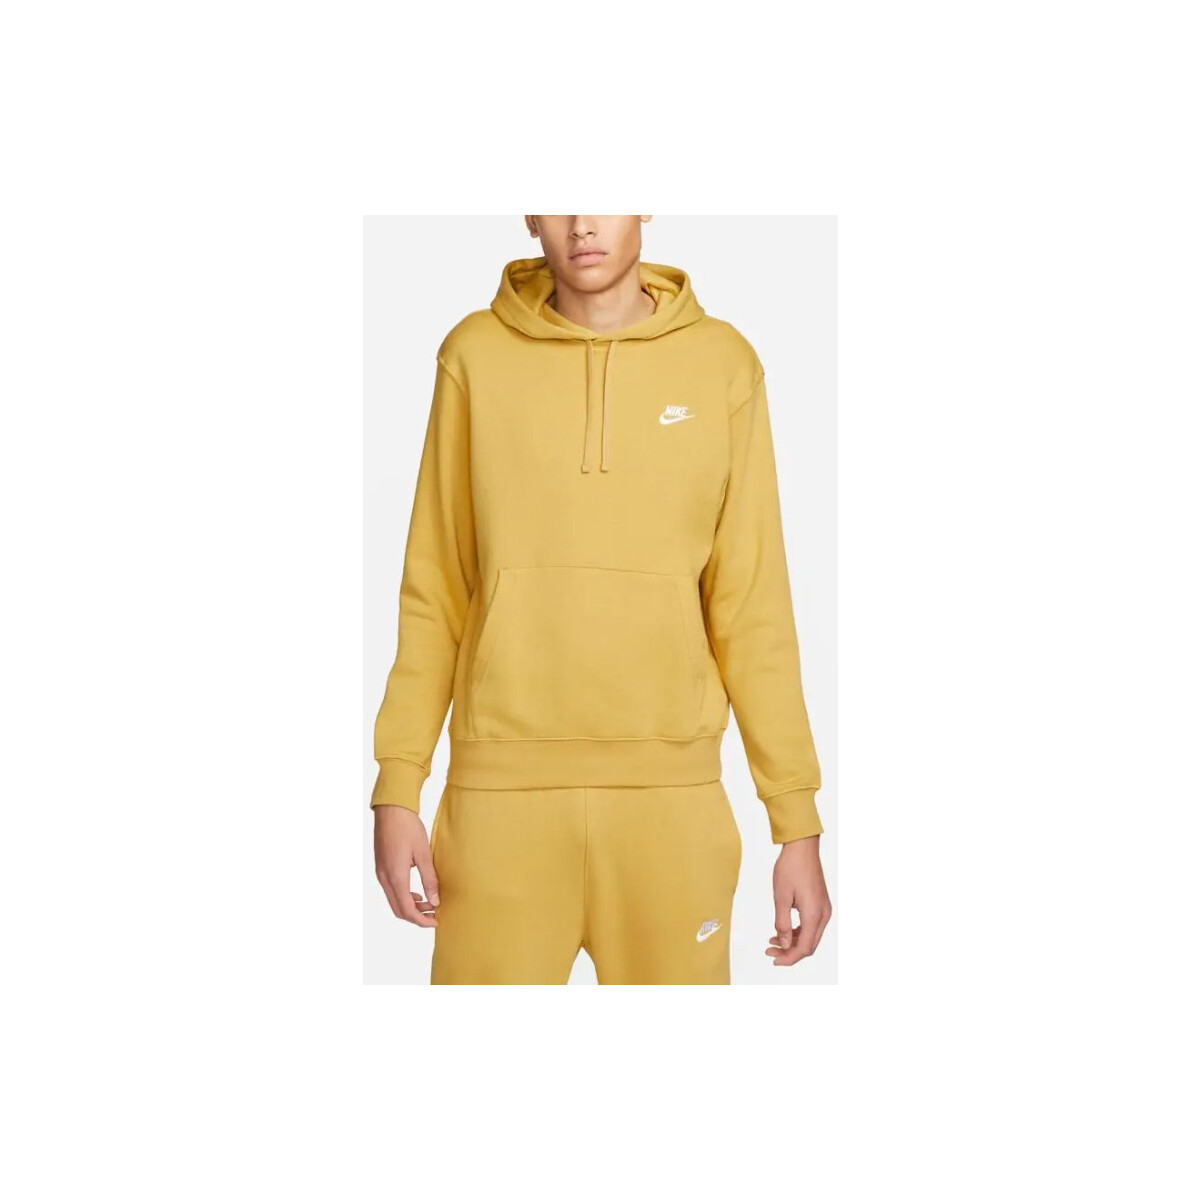 Nike Autres - Sweat à capuche - jaune H66p2XTE